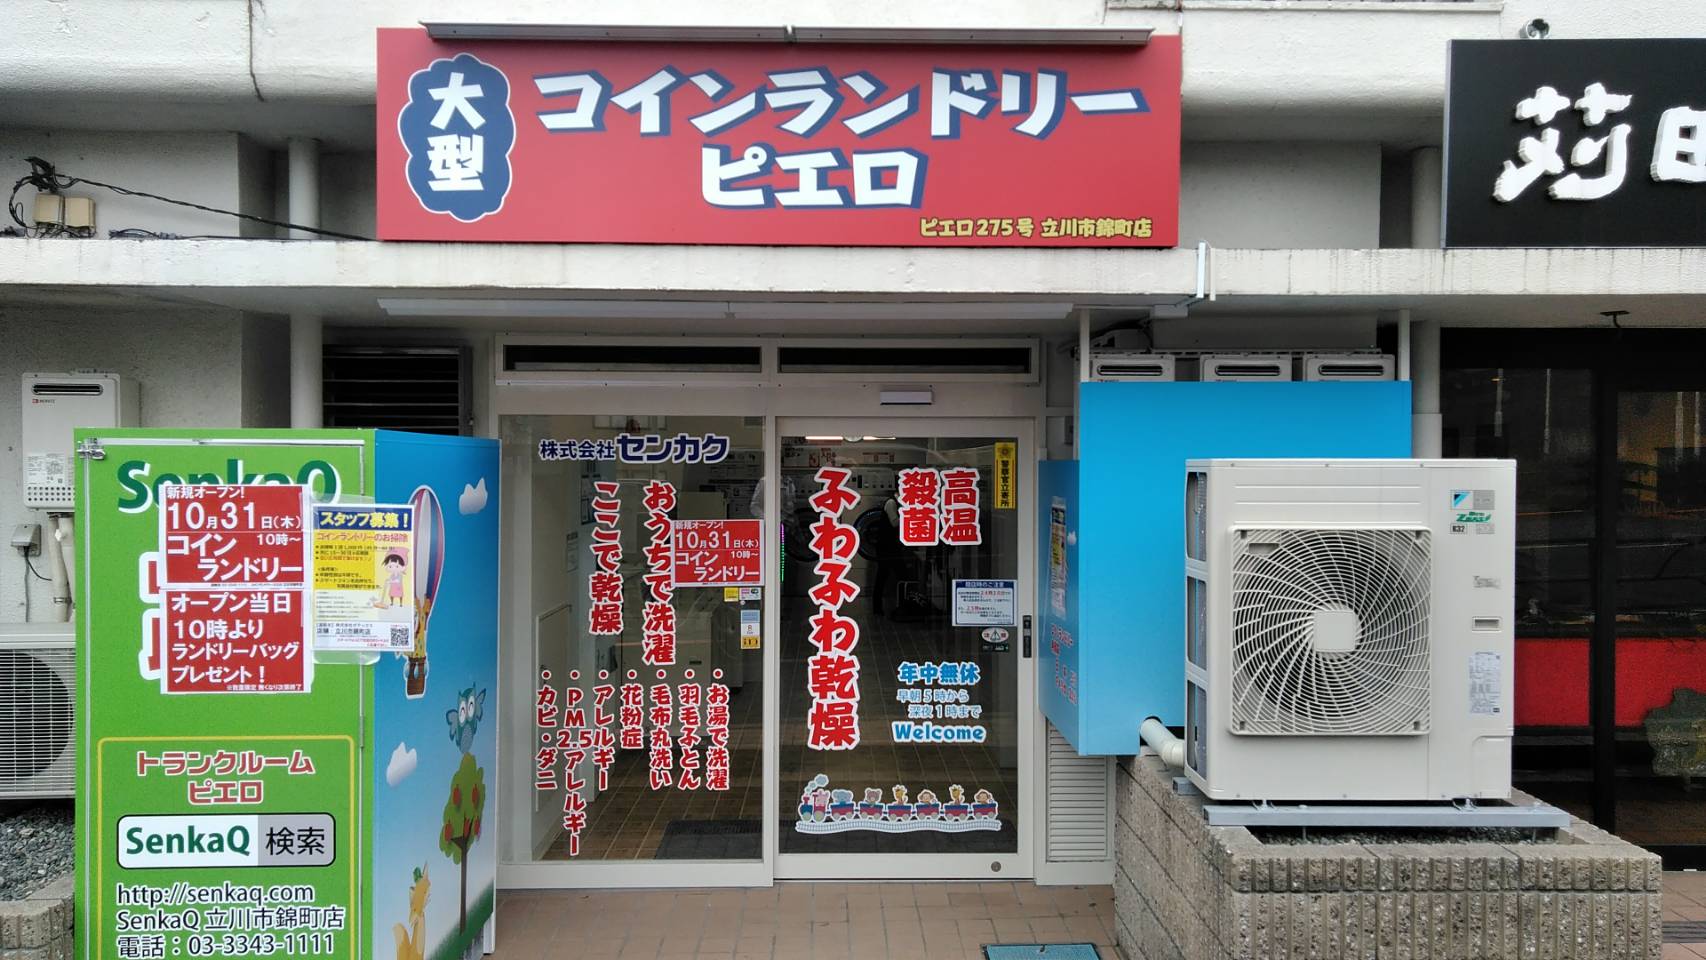 コインランドリーピエロ 275号 立川市錦町店の写真